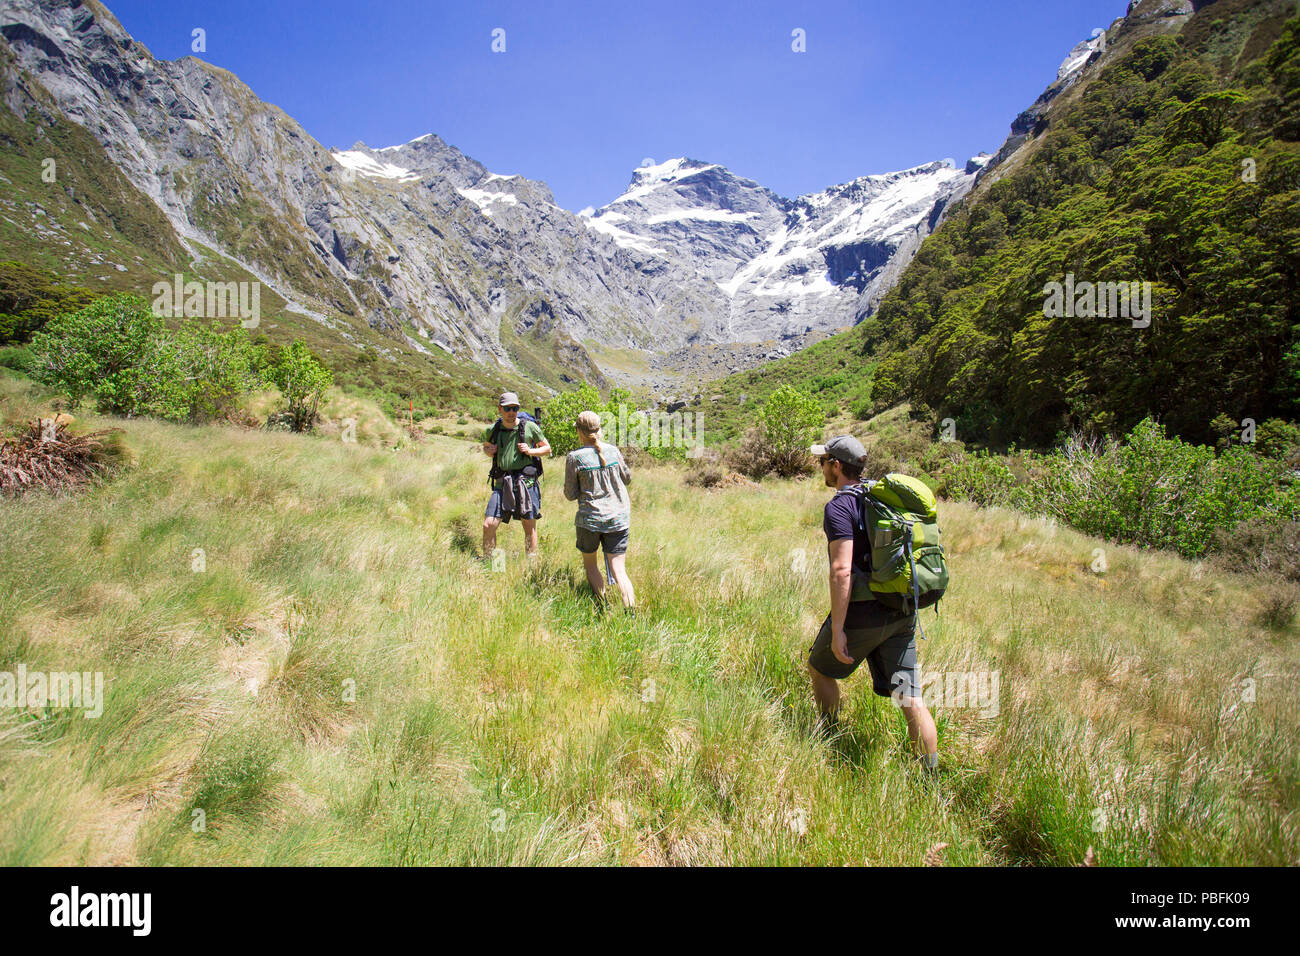 Nuova Zelanda aka Aotearoa, Isola del Sud, Mt Aspiring National Park, gruppo di amici escursionismo in Valle, con montagne panoramiche. Modello rilasciato. Foto Stock